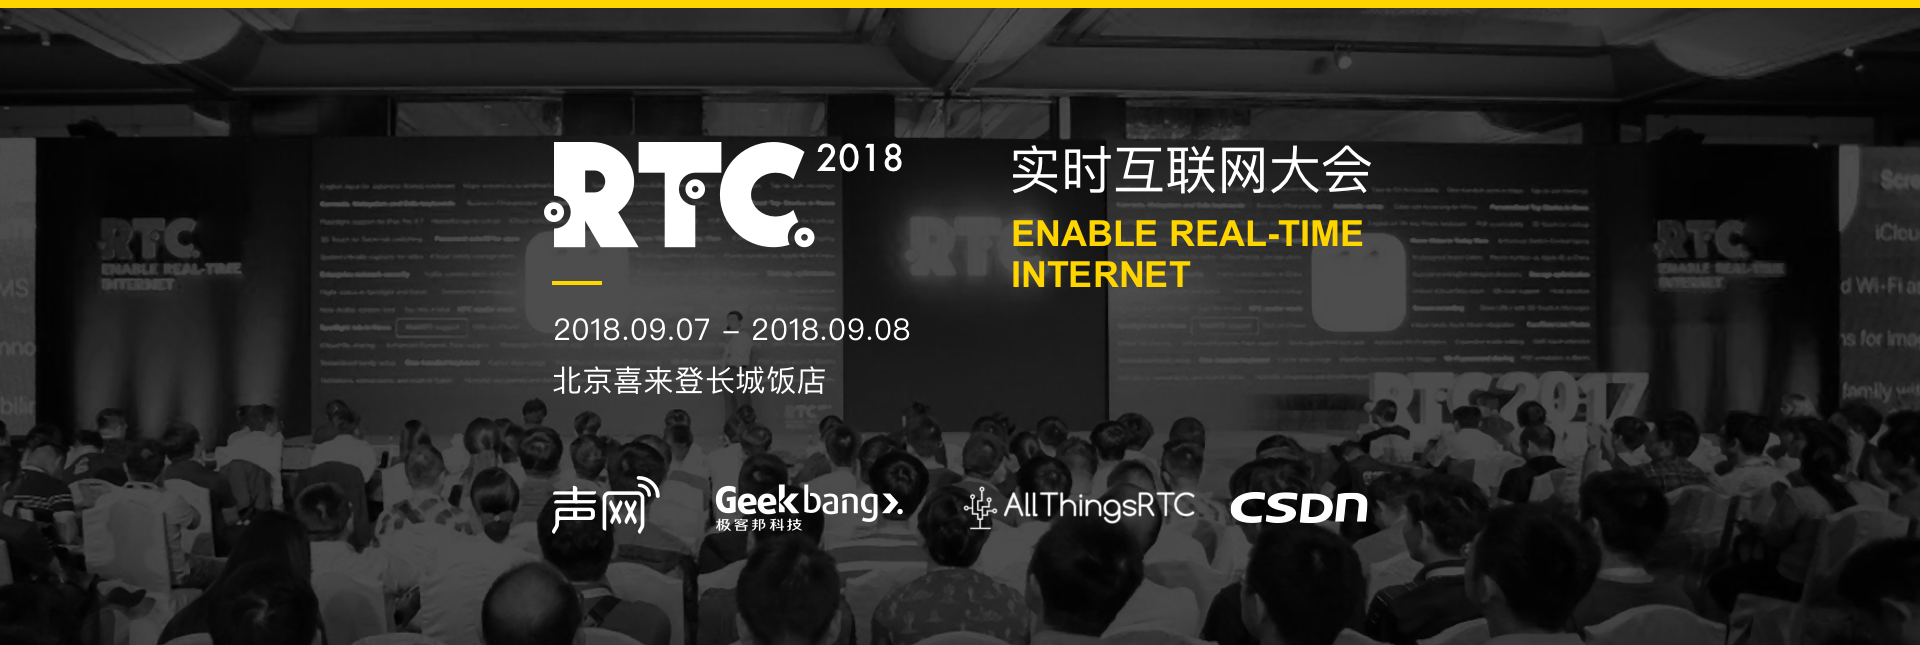 RTC2018 实时互联网大会